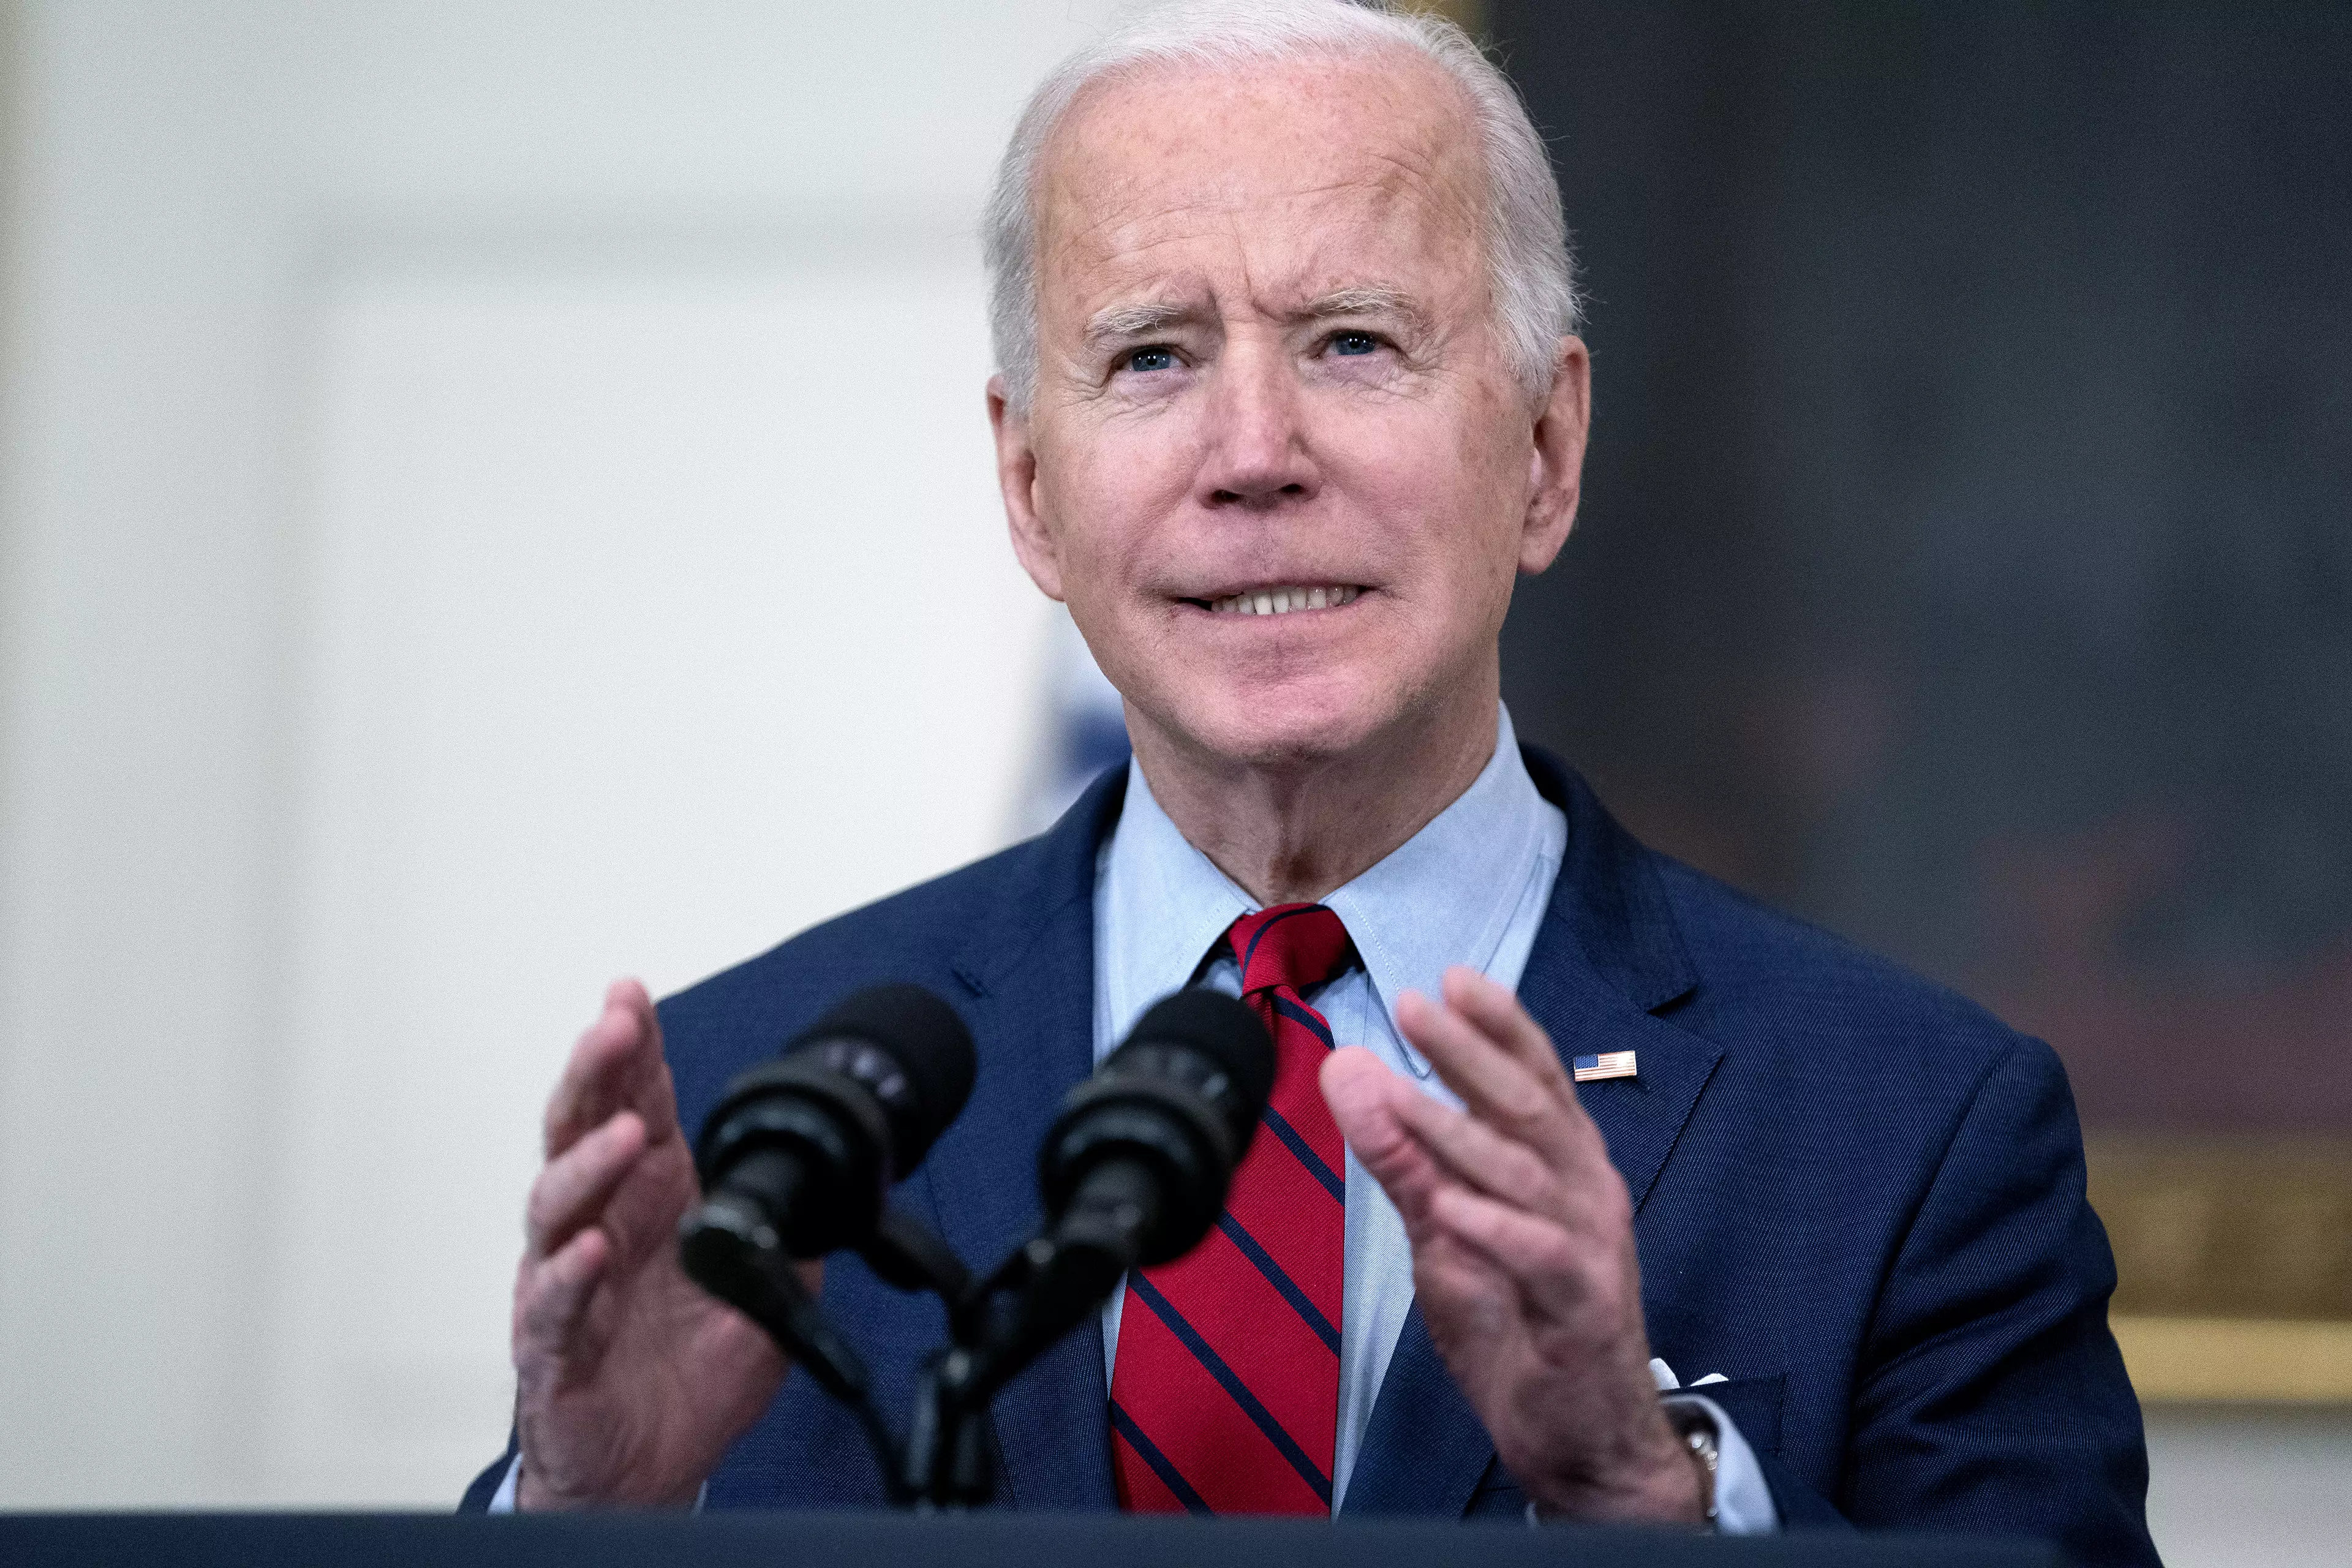 Joe Biden Calls For Ban On Assault Rifles After Colorado Mass Shooting